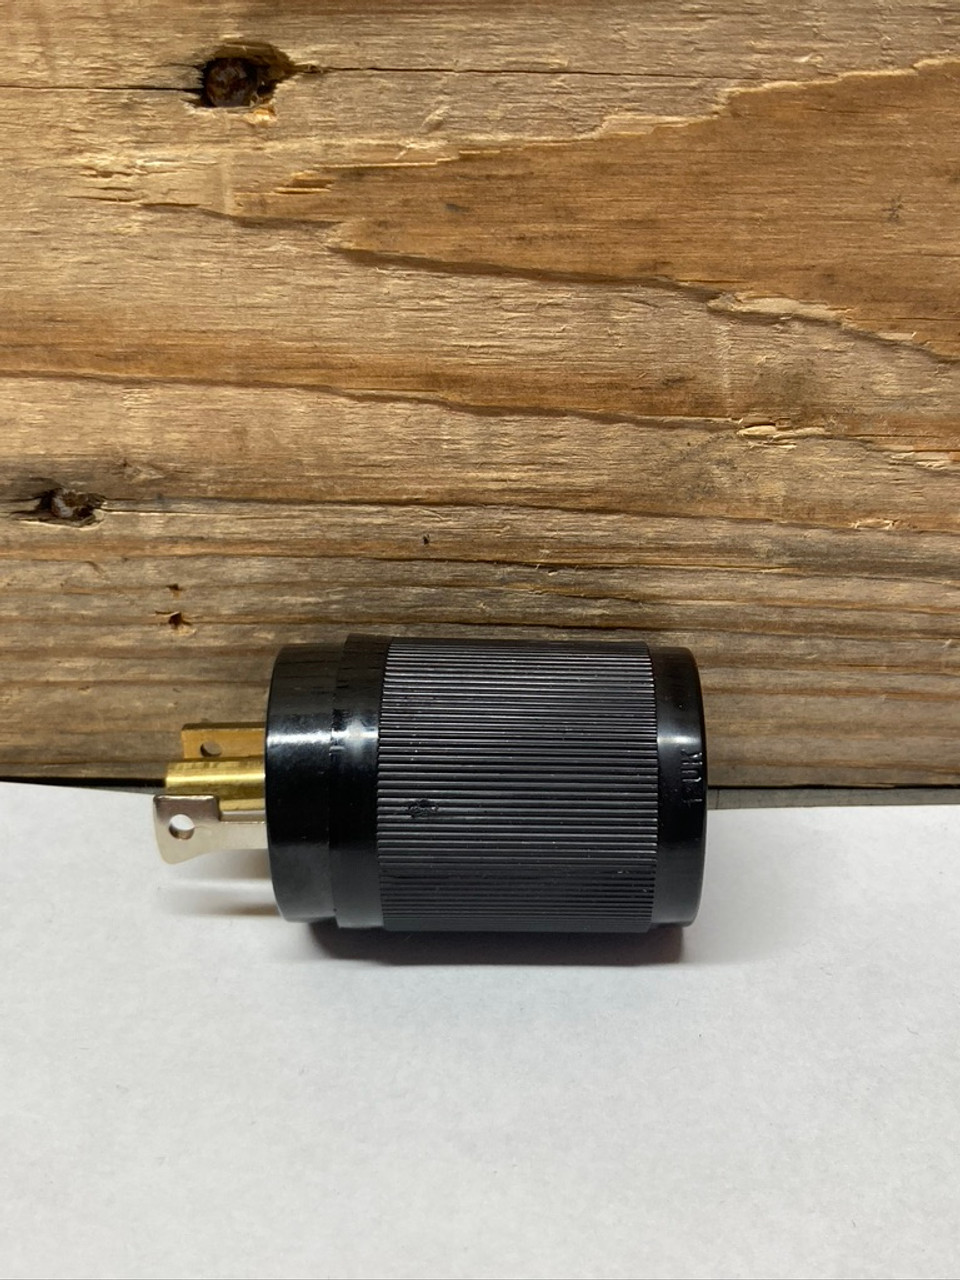 Midget Twist Locking Male Plug HBL7594 Hubbell 15A 125V AC